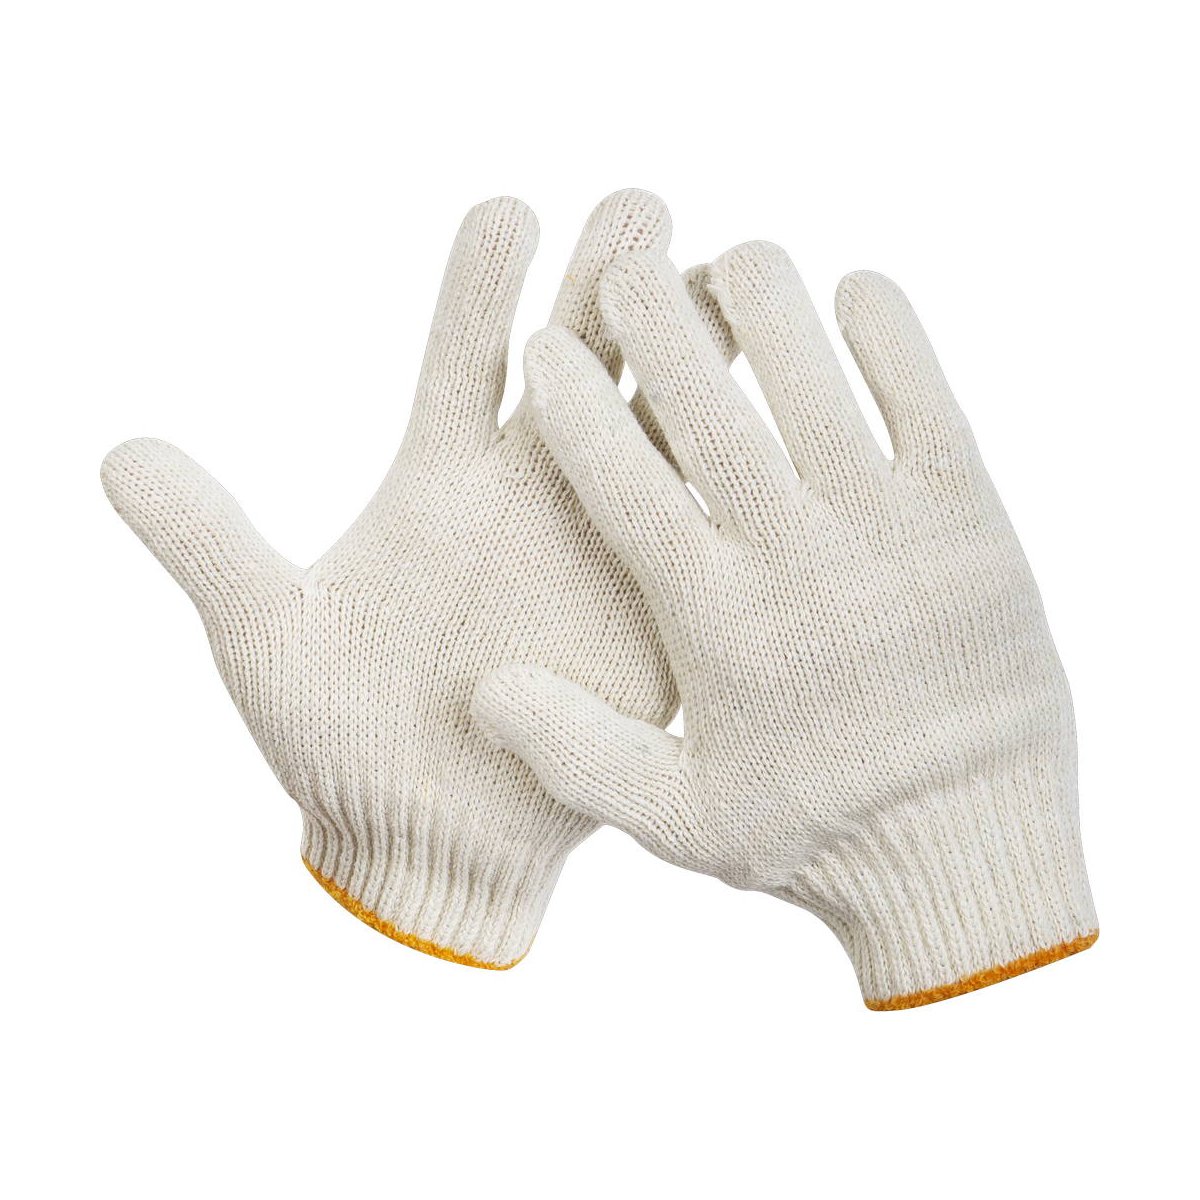 Рабочие перчатки STAYER р. L-XL для тяжелых работ (11402-XL)Купить